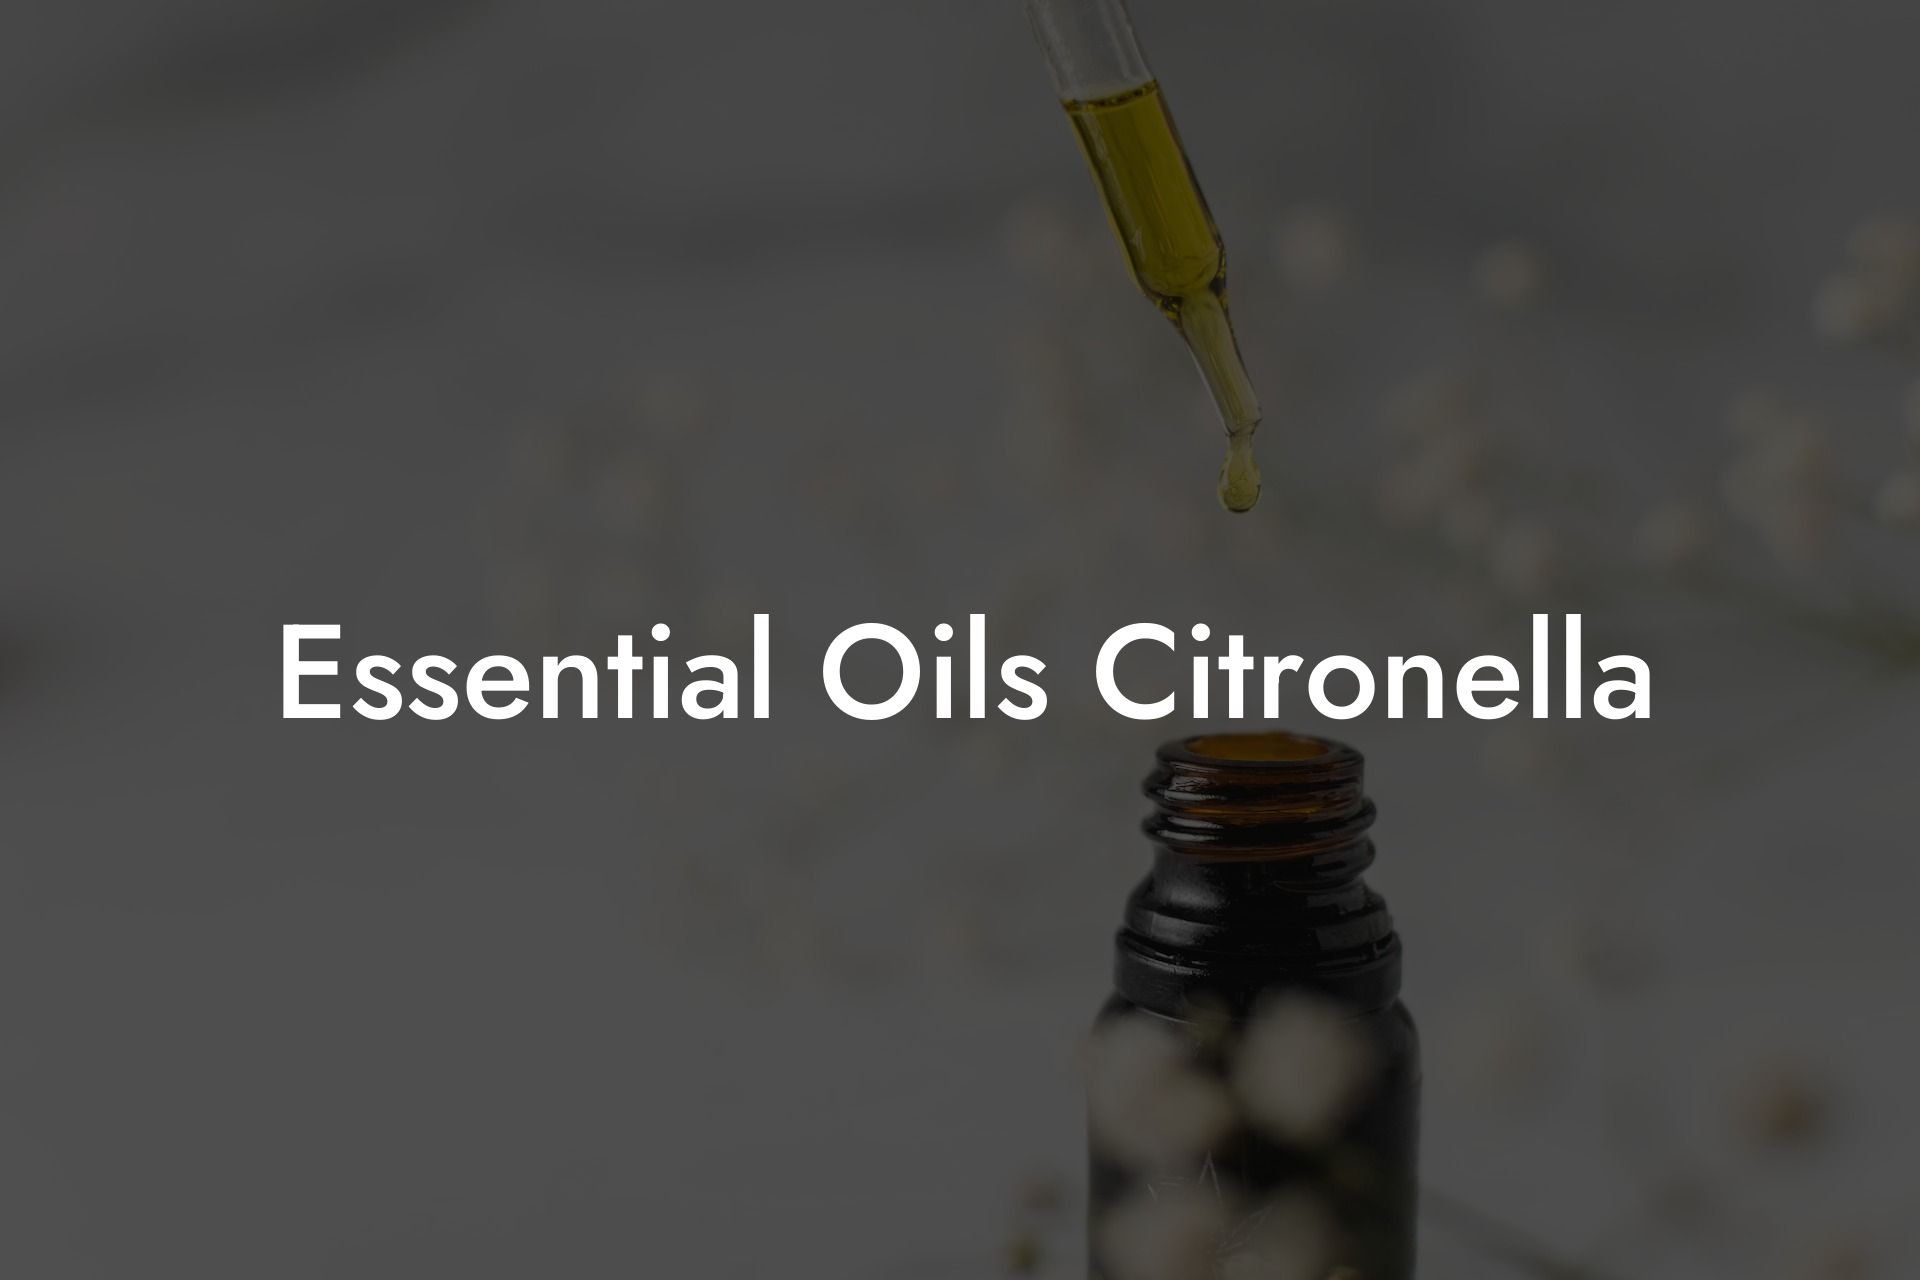 Essential Oils Citronella